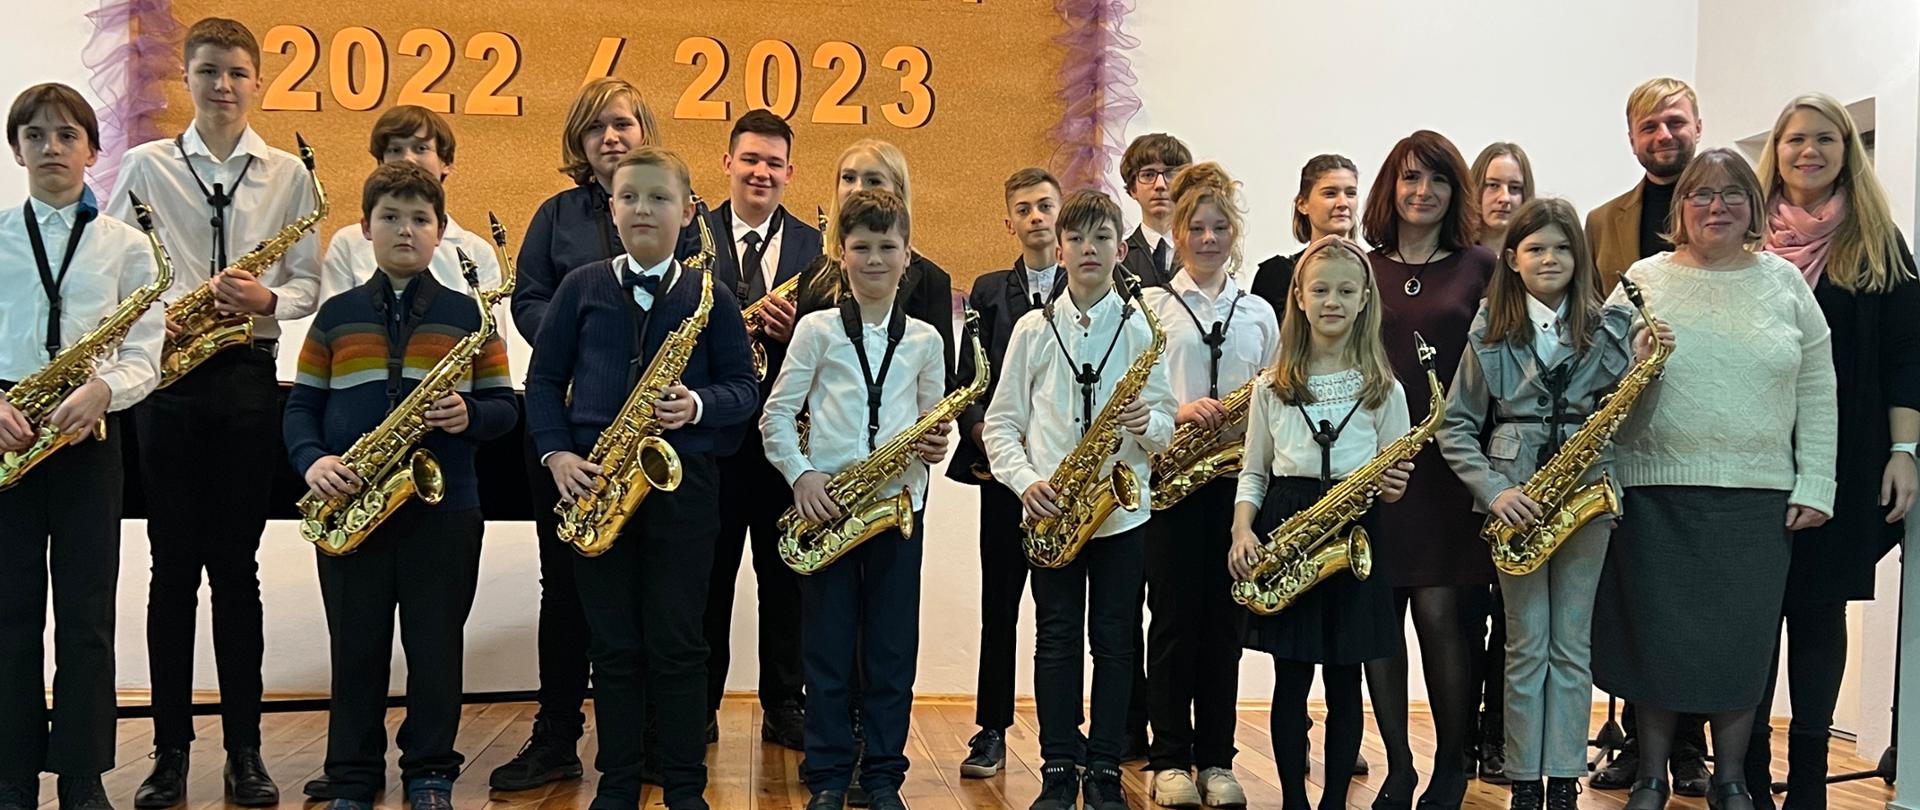 Zdjęcie przedstawiające wszystkich wykonawców koncertu muzyki saksofonowej na scenie w auli szkoły.